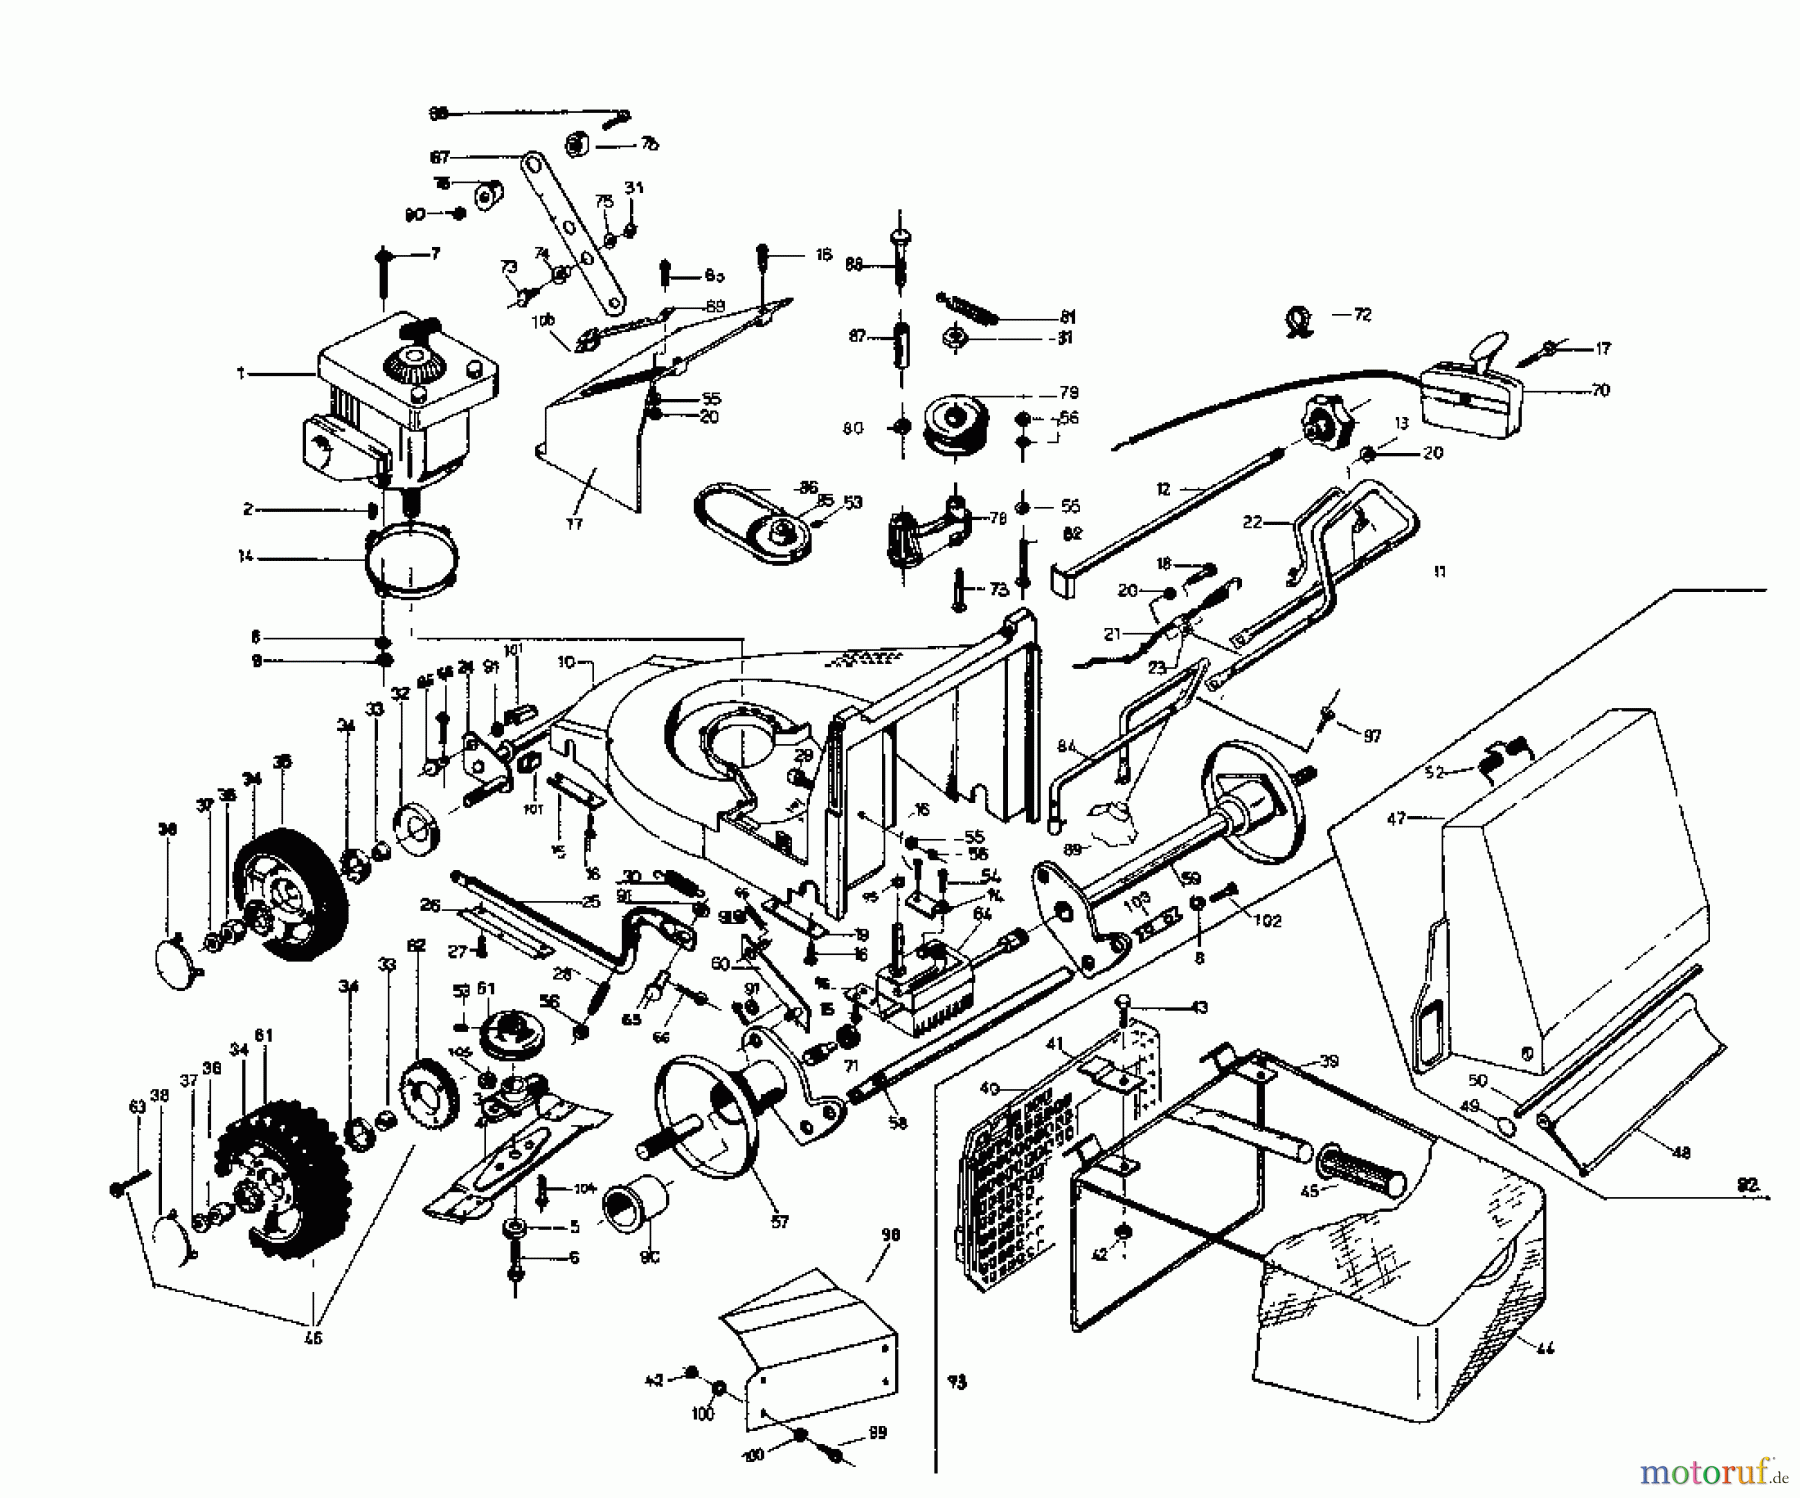  Rotaro Motormäher mit Antrieb ROTARO  48 SE 188-0154  (1988) Grundgerät